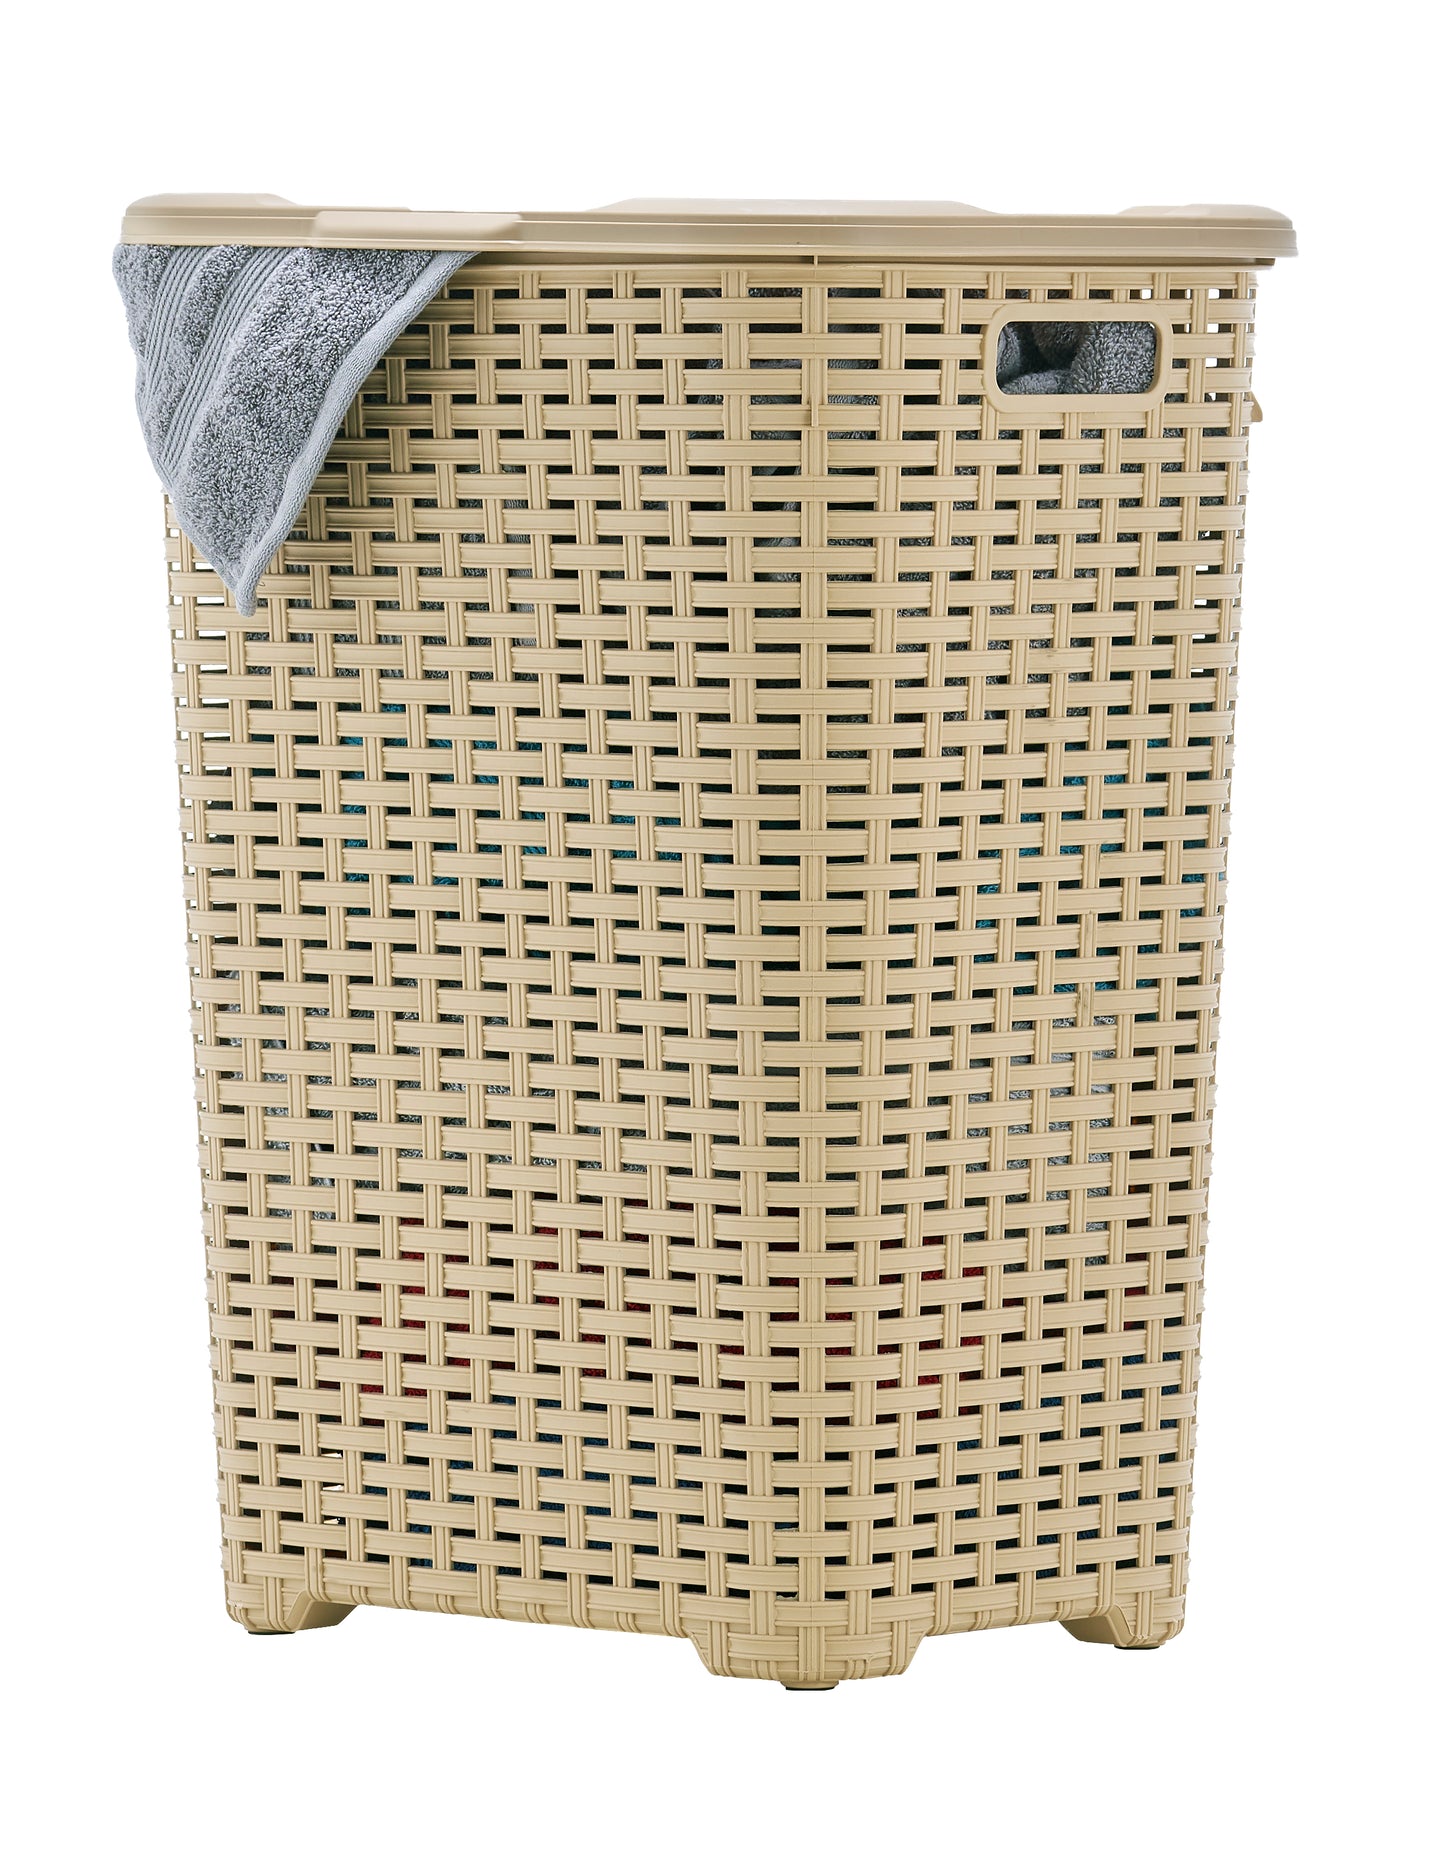 Wicker Style Laundry Hamper, 60 Liter.